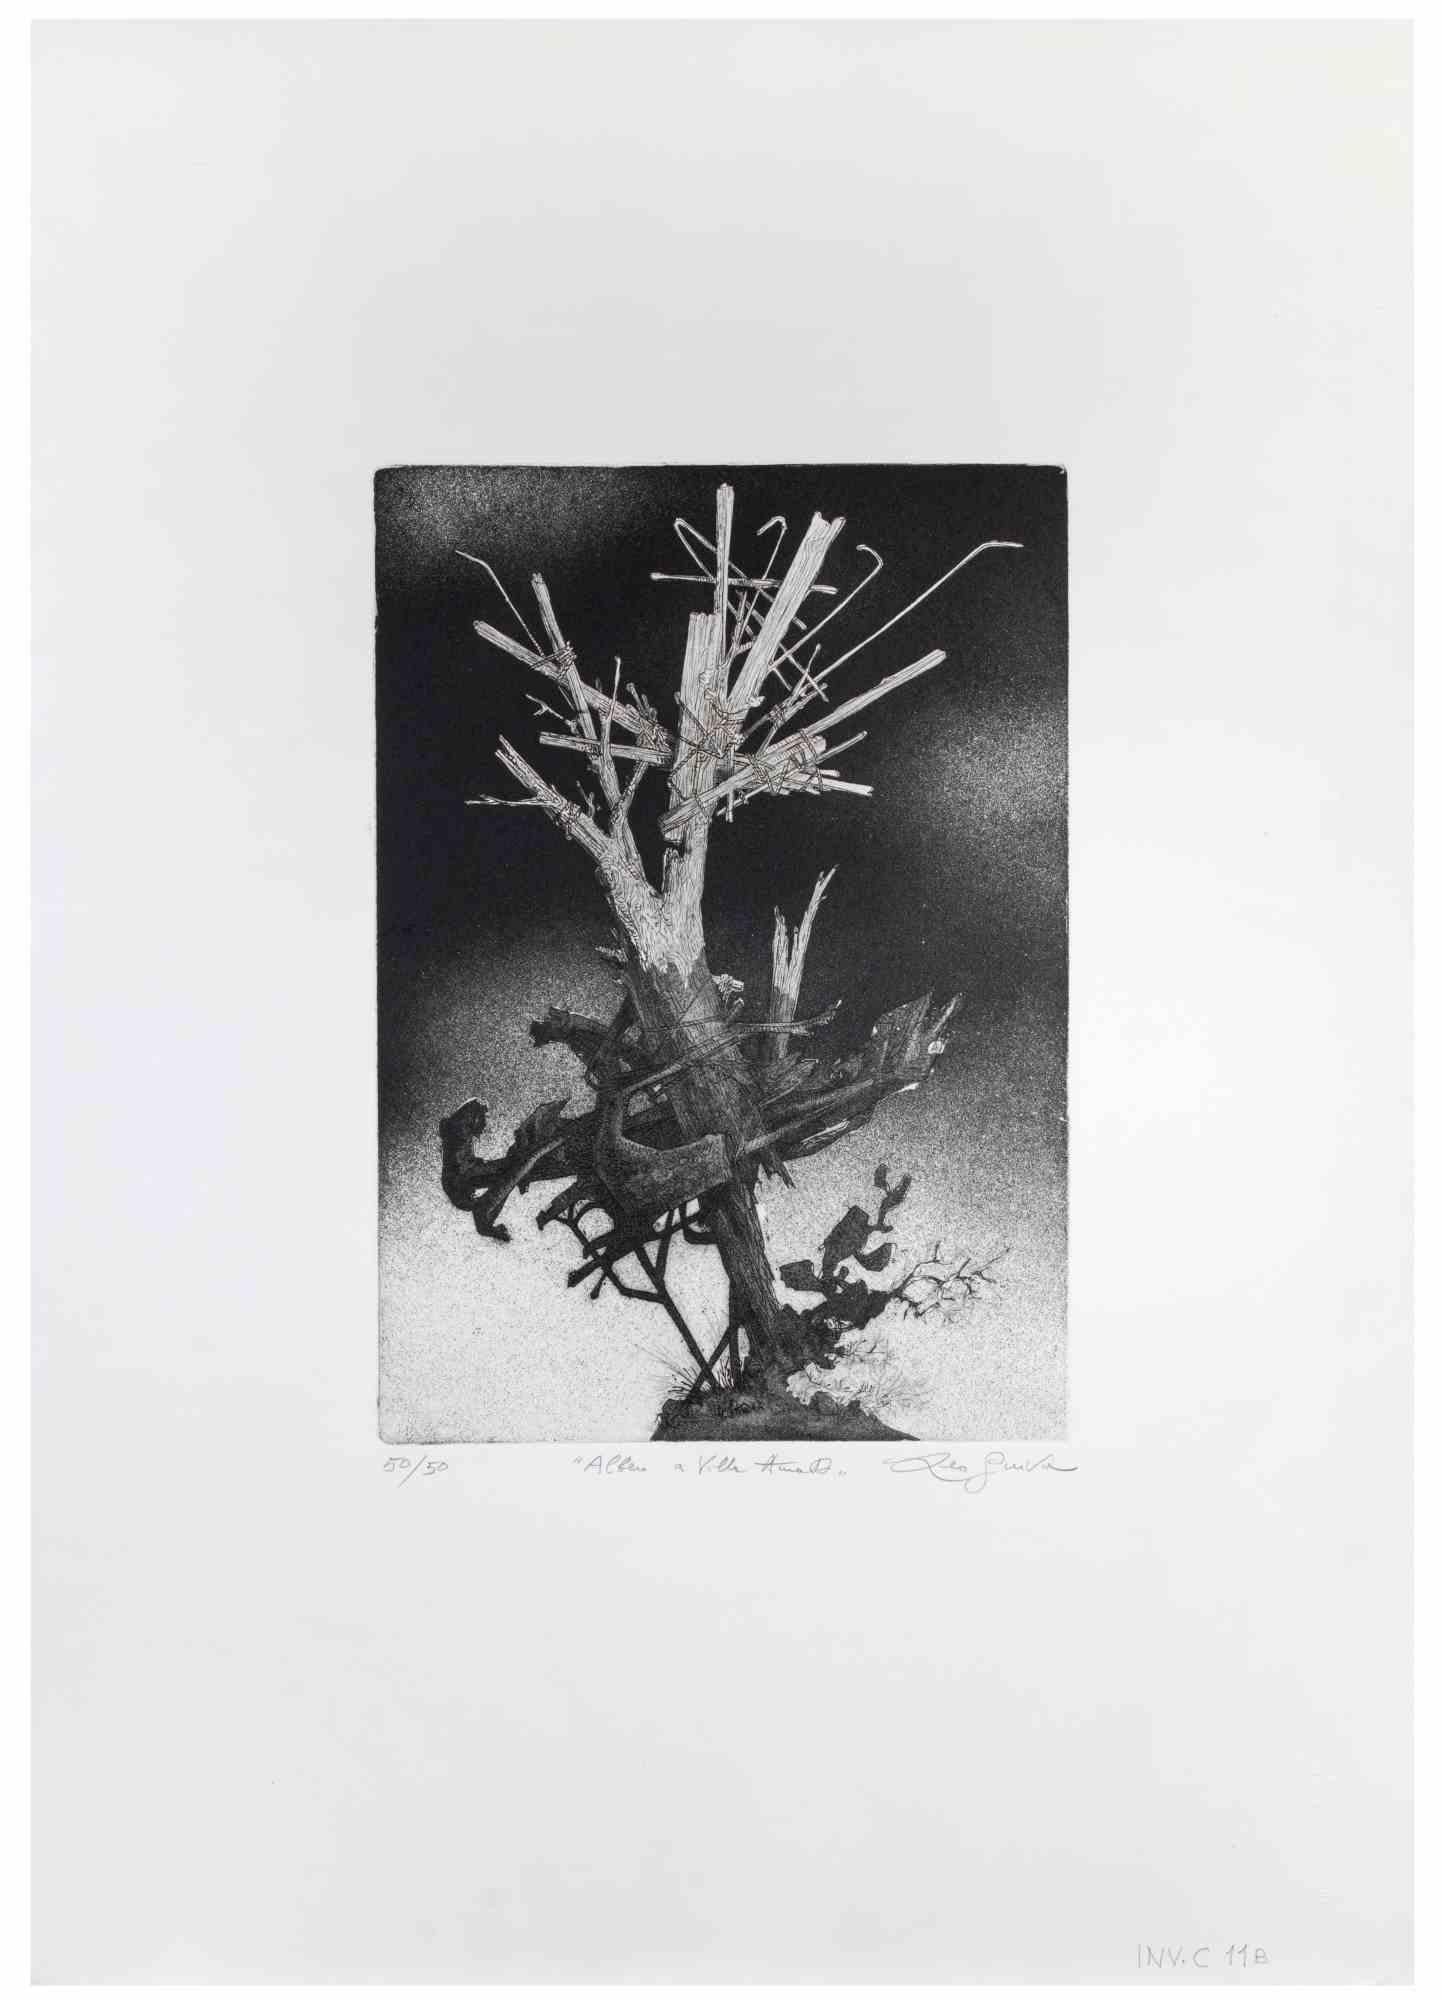 Der Baum in der Villa ist ein Kunstwerk des zeitgenössischen italienischen Künstlers  Leo Guida (1992 - 2017) in den 1970er Jahren.

Original-Radierung in Schwarz-Weiß auf Papier.

Handsigniert am unteren rechten Rand, nummerierte Auflage von 50